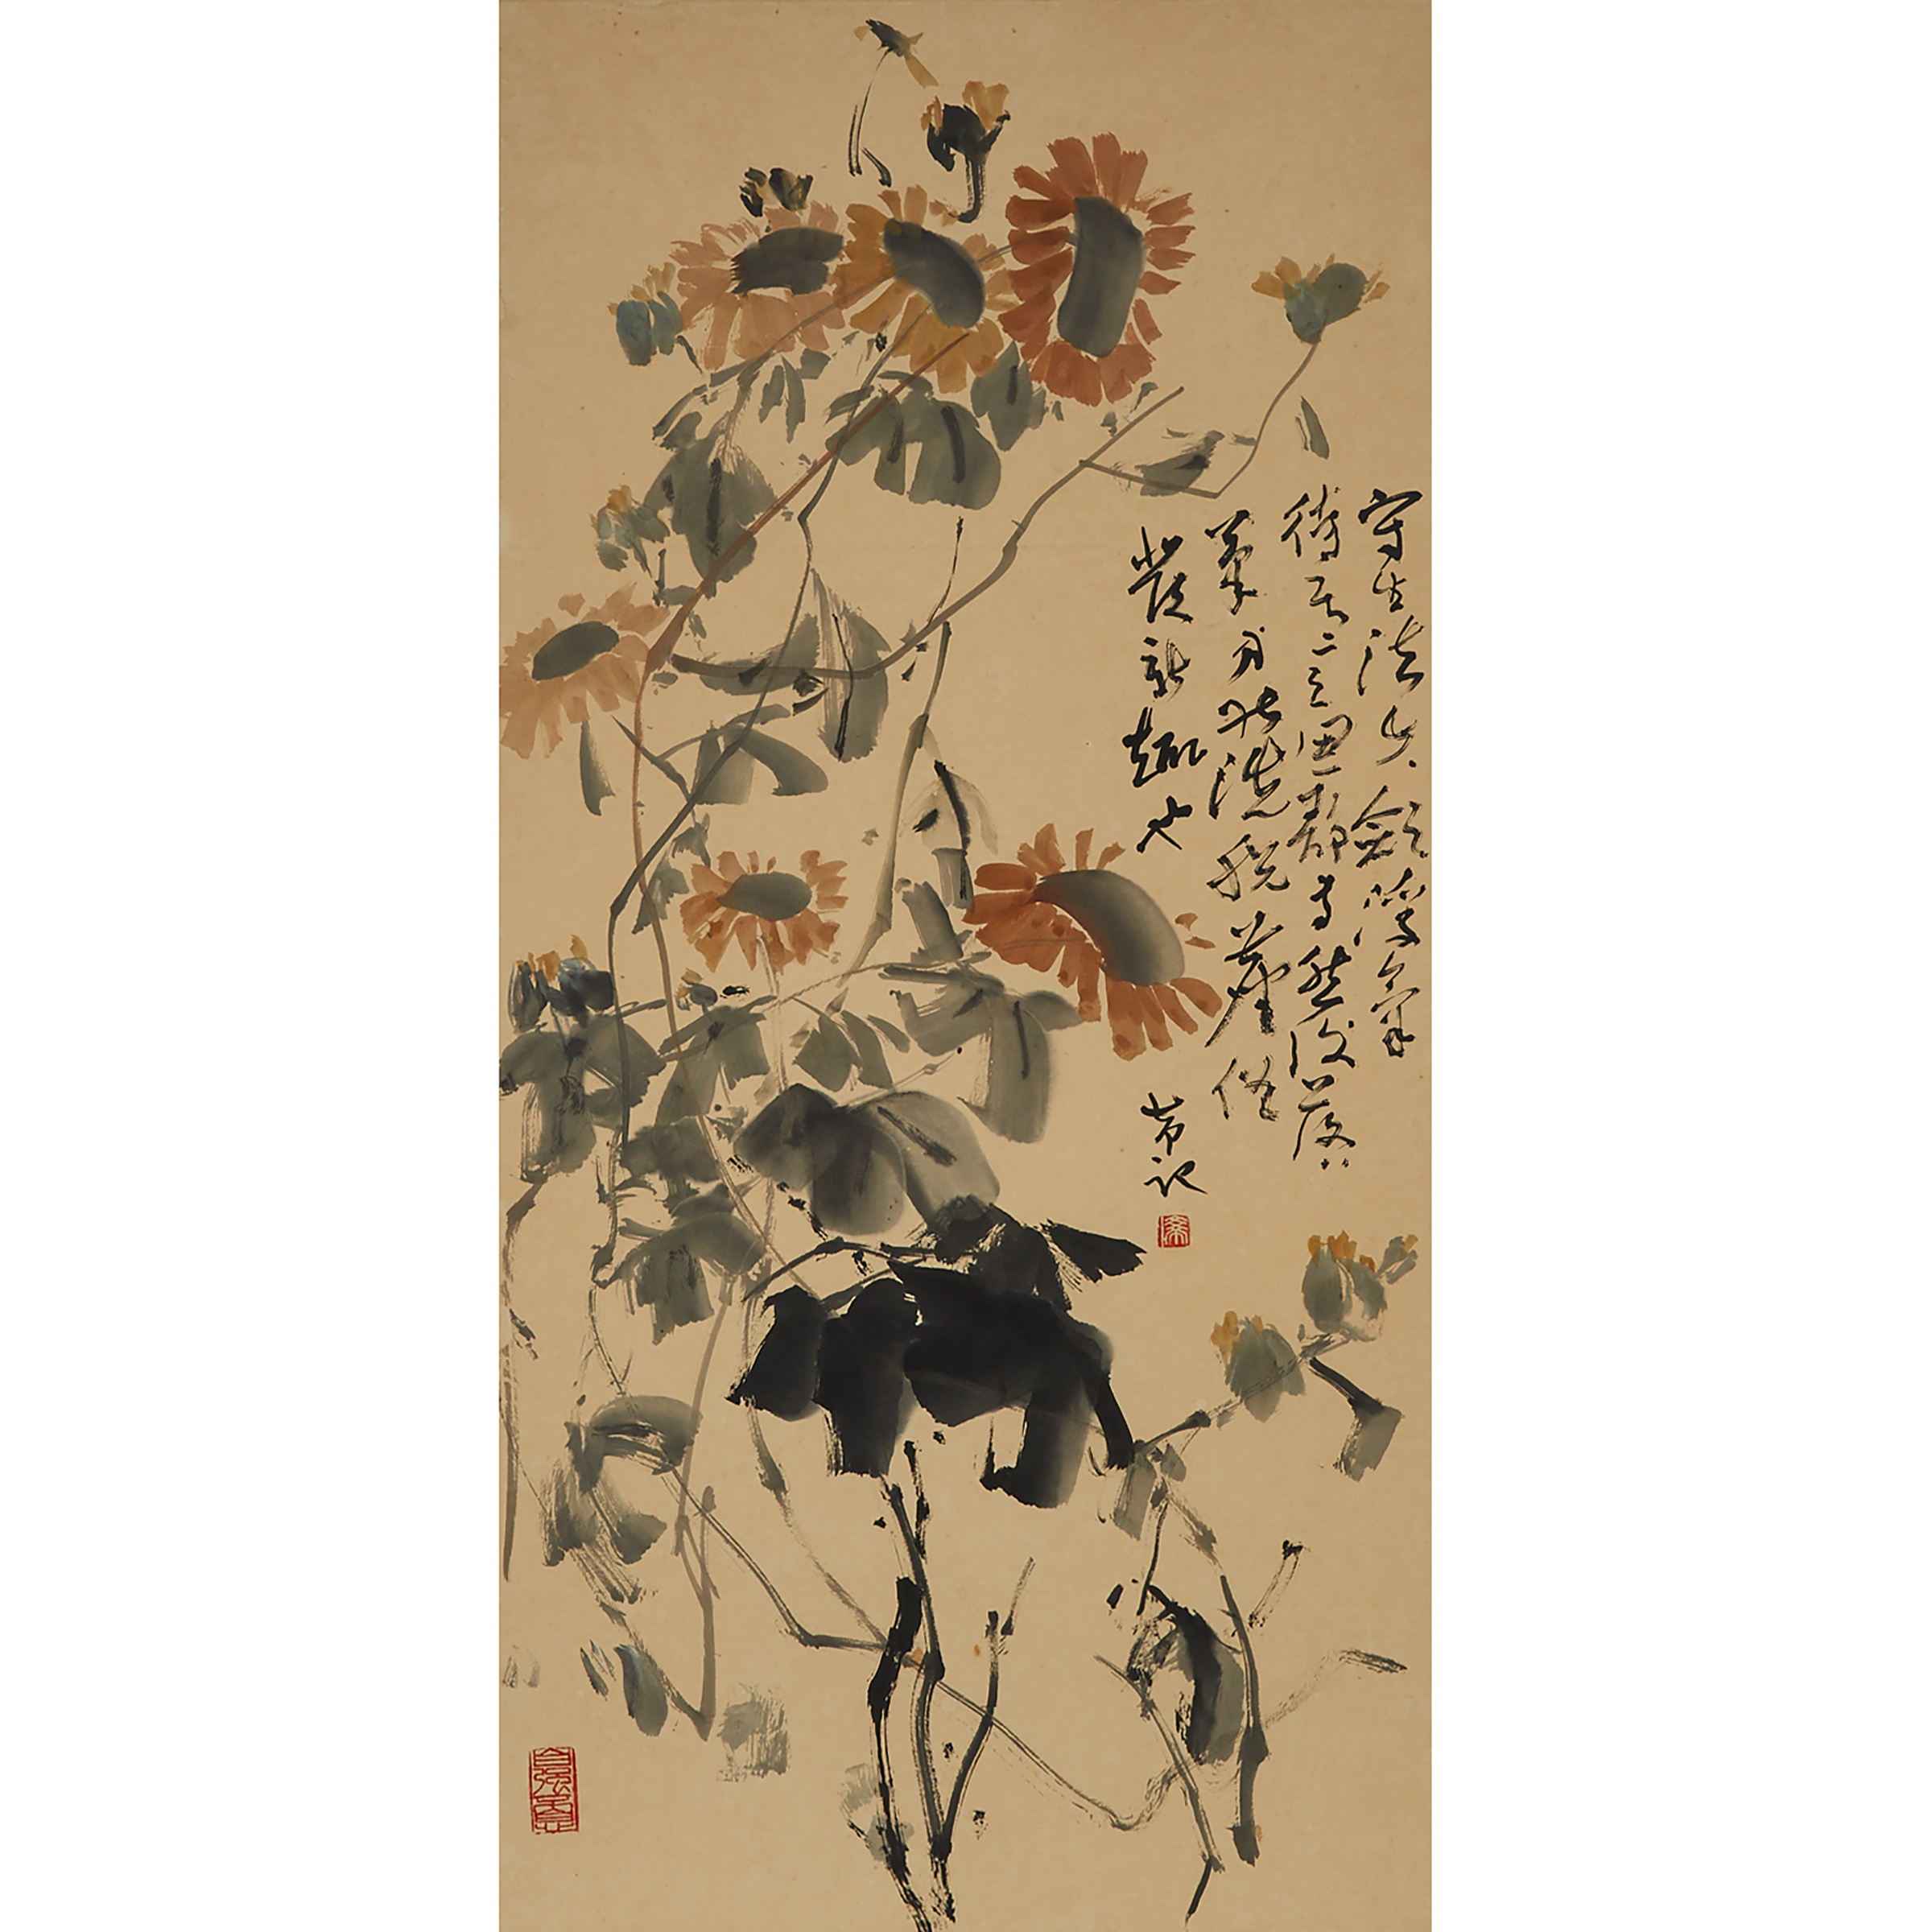 Chen Wen Hsi (1906-1991), Sunflowers